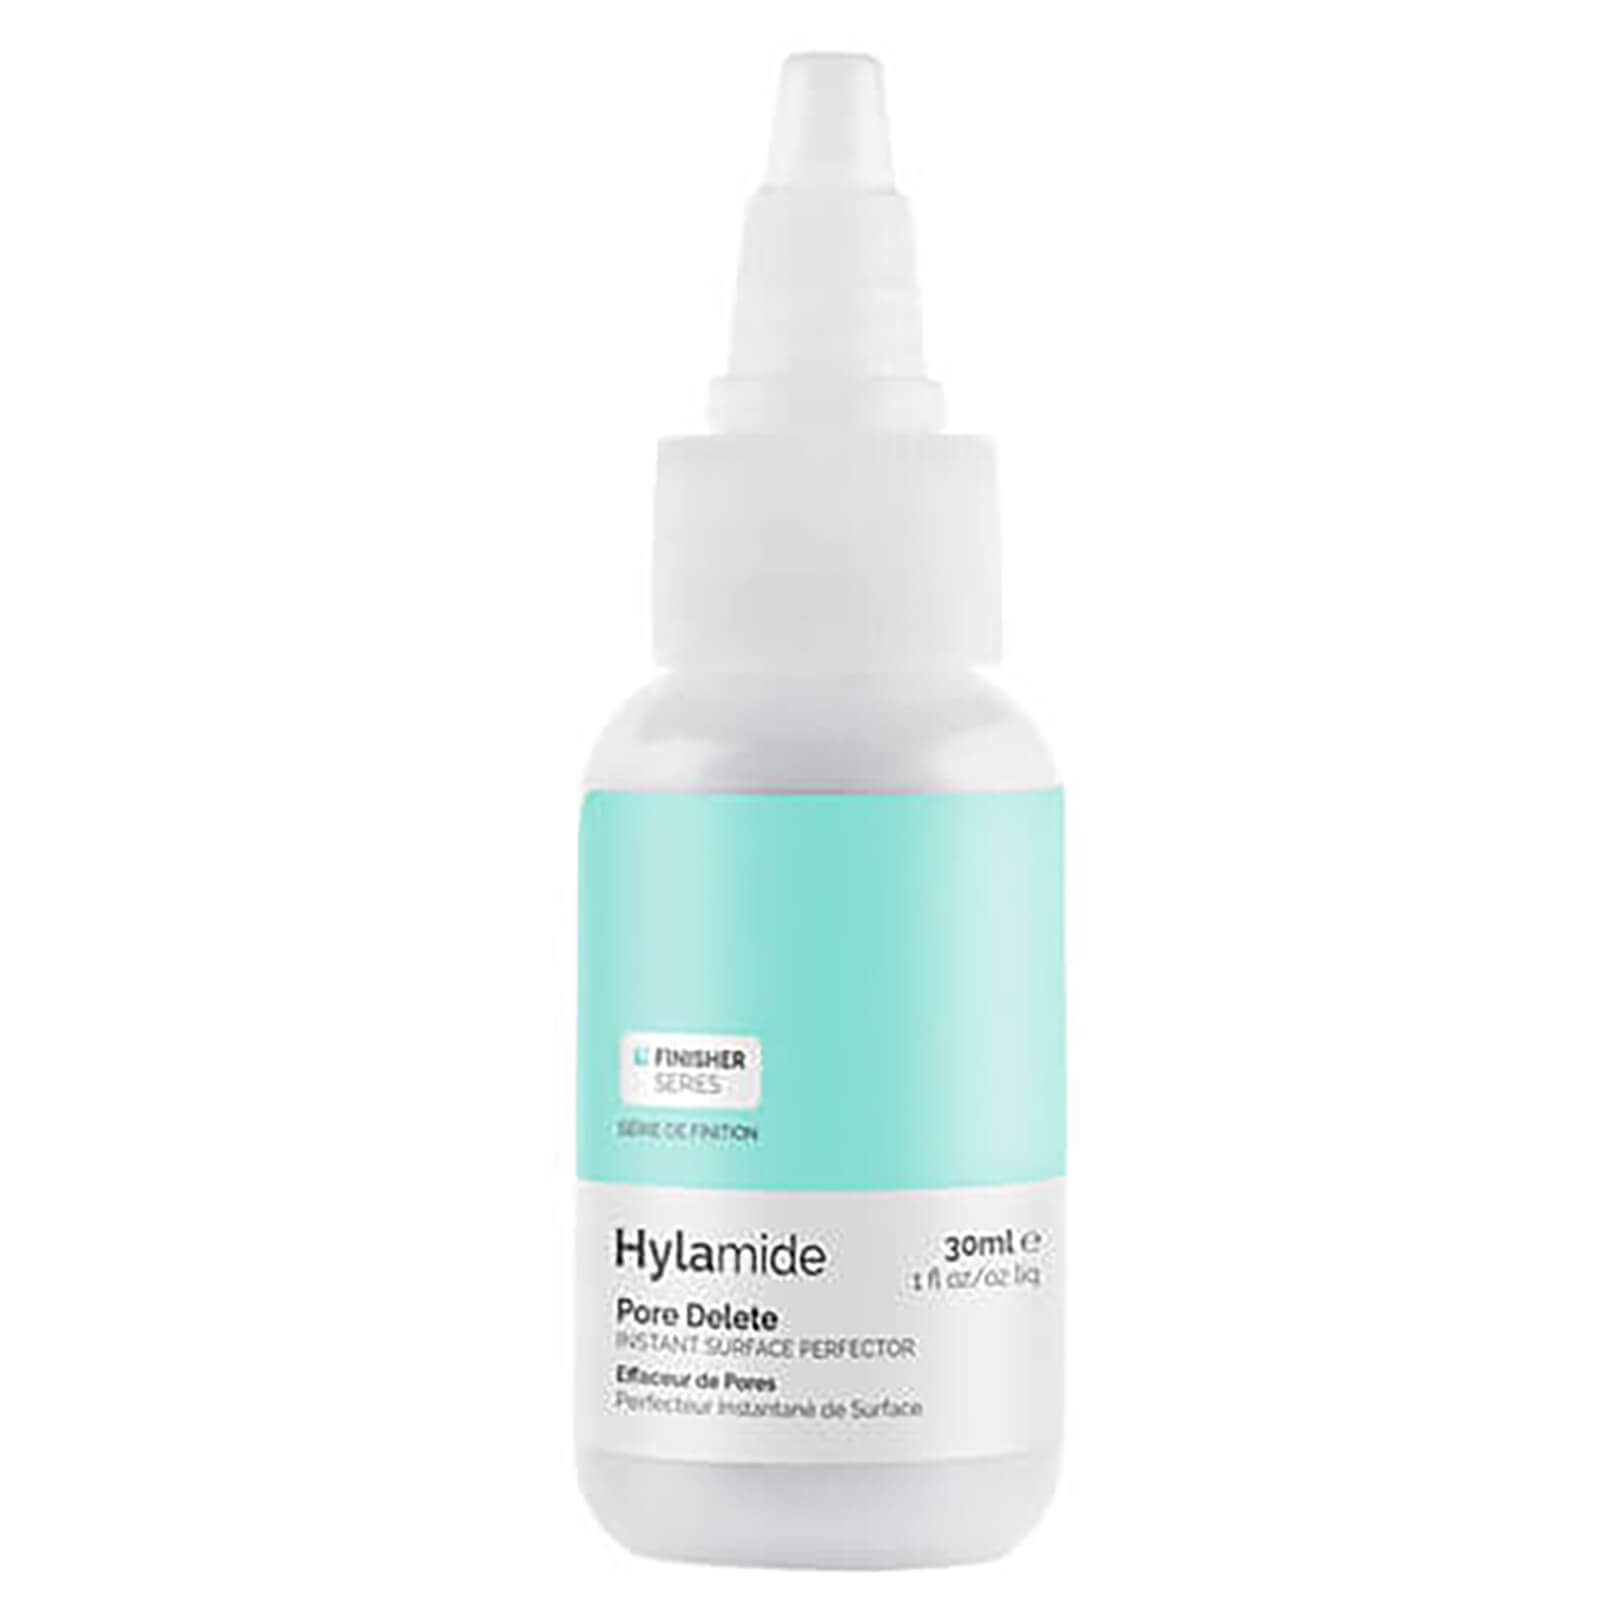 Solución Difuminadora de Poros Hylamide Pore Delete Finisher (30ml)